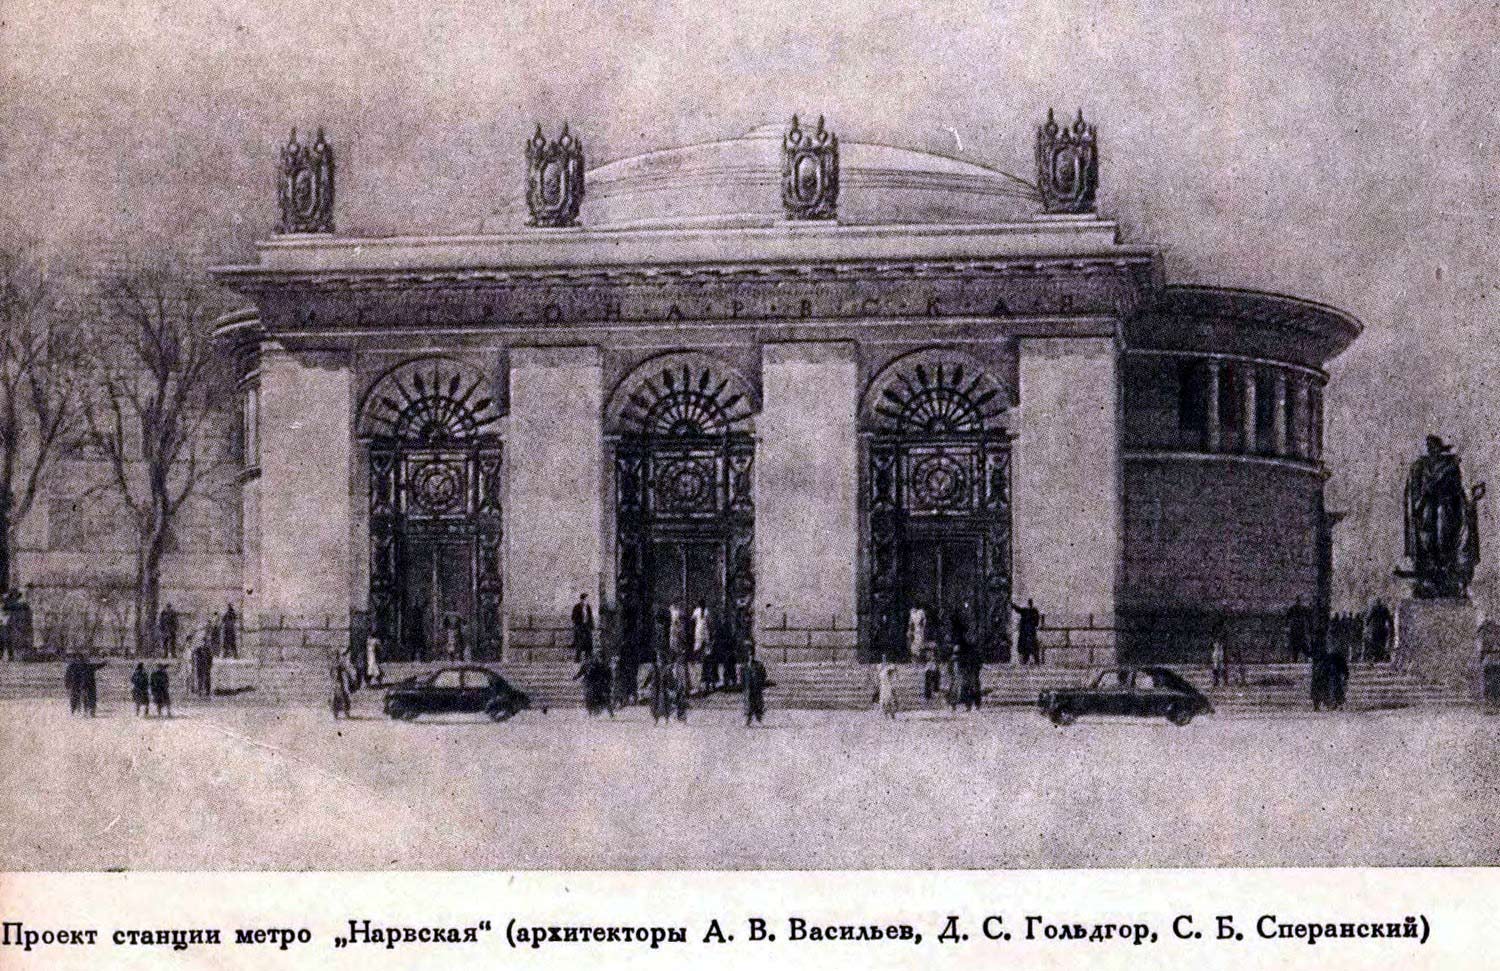 Petersburg, Площадь Стачек, 2. Petersburg — Sketches